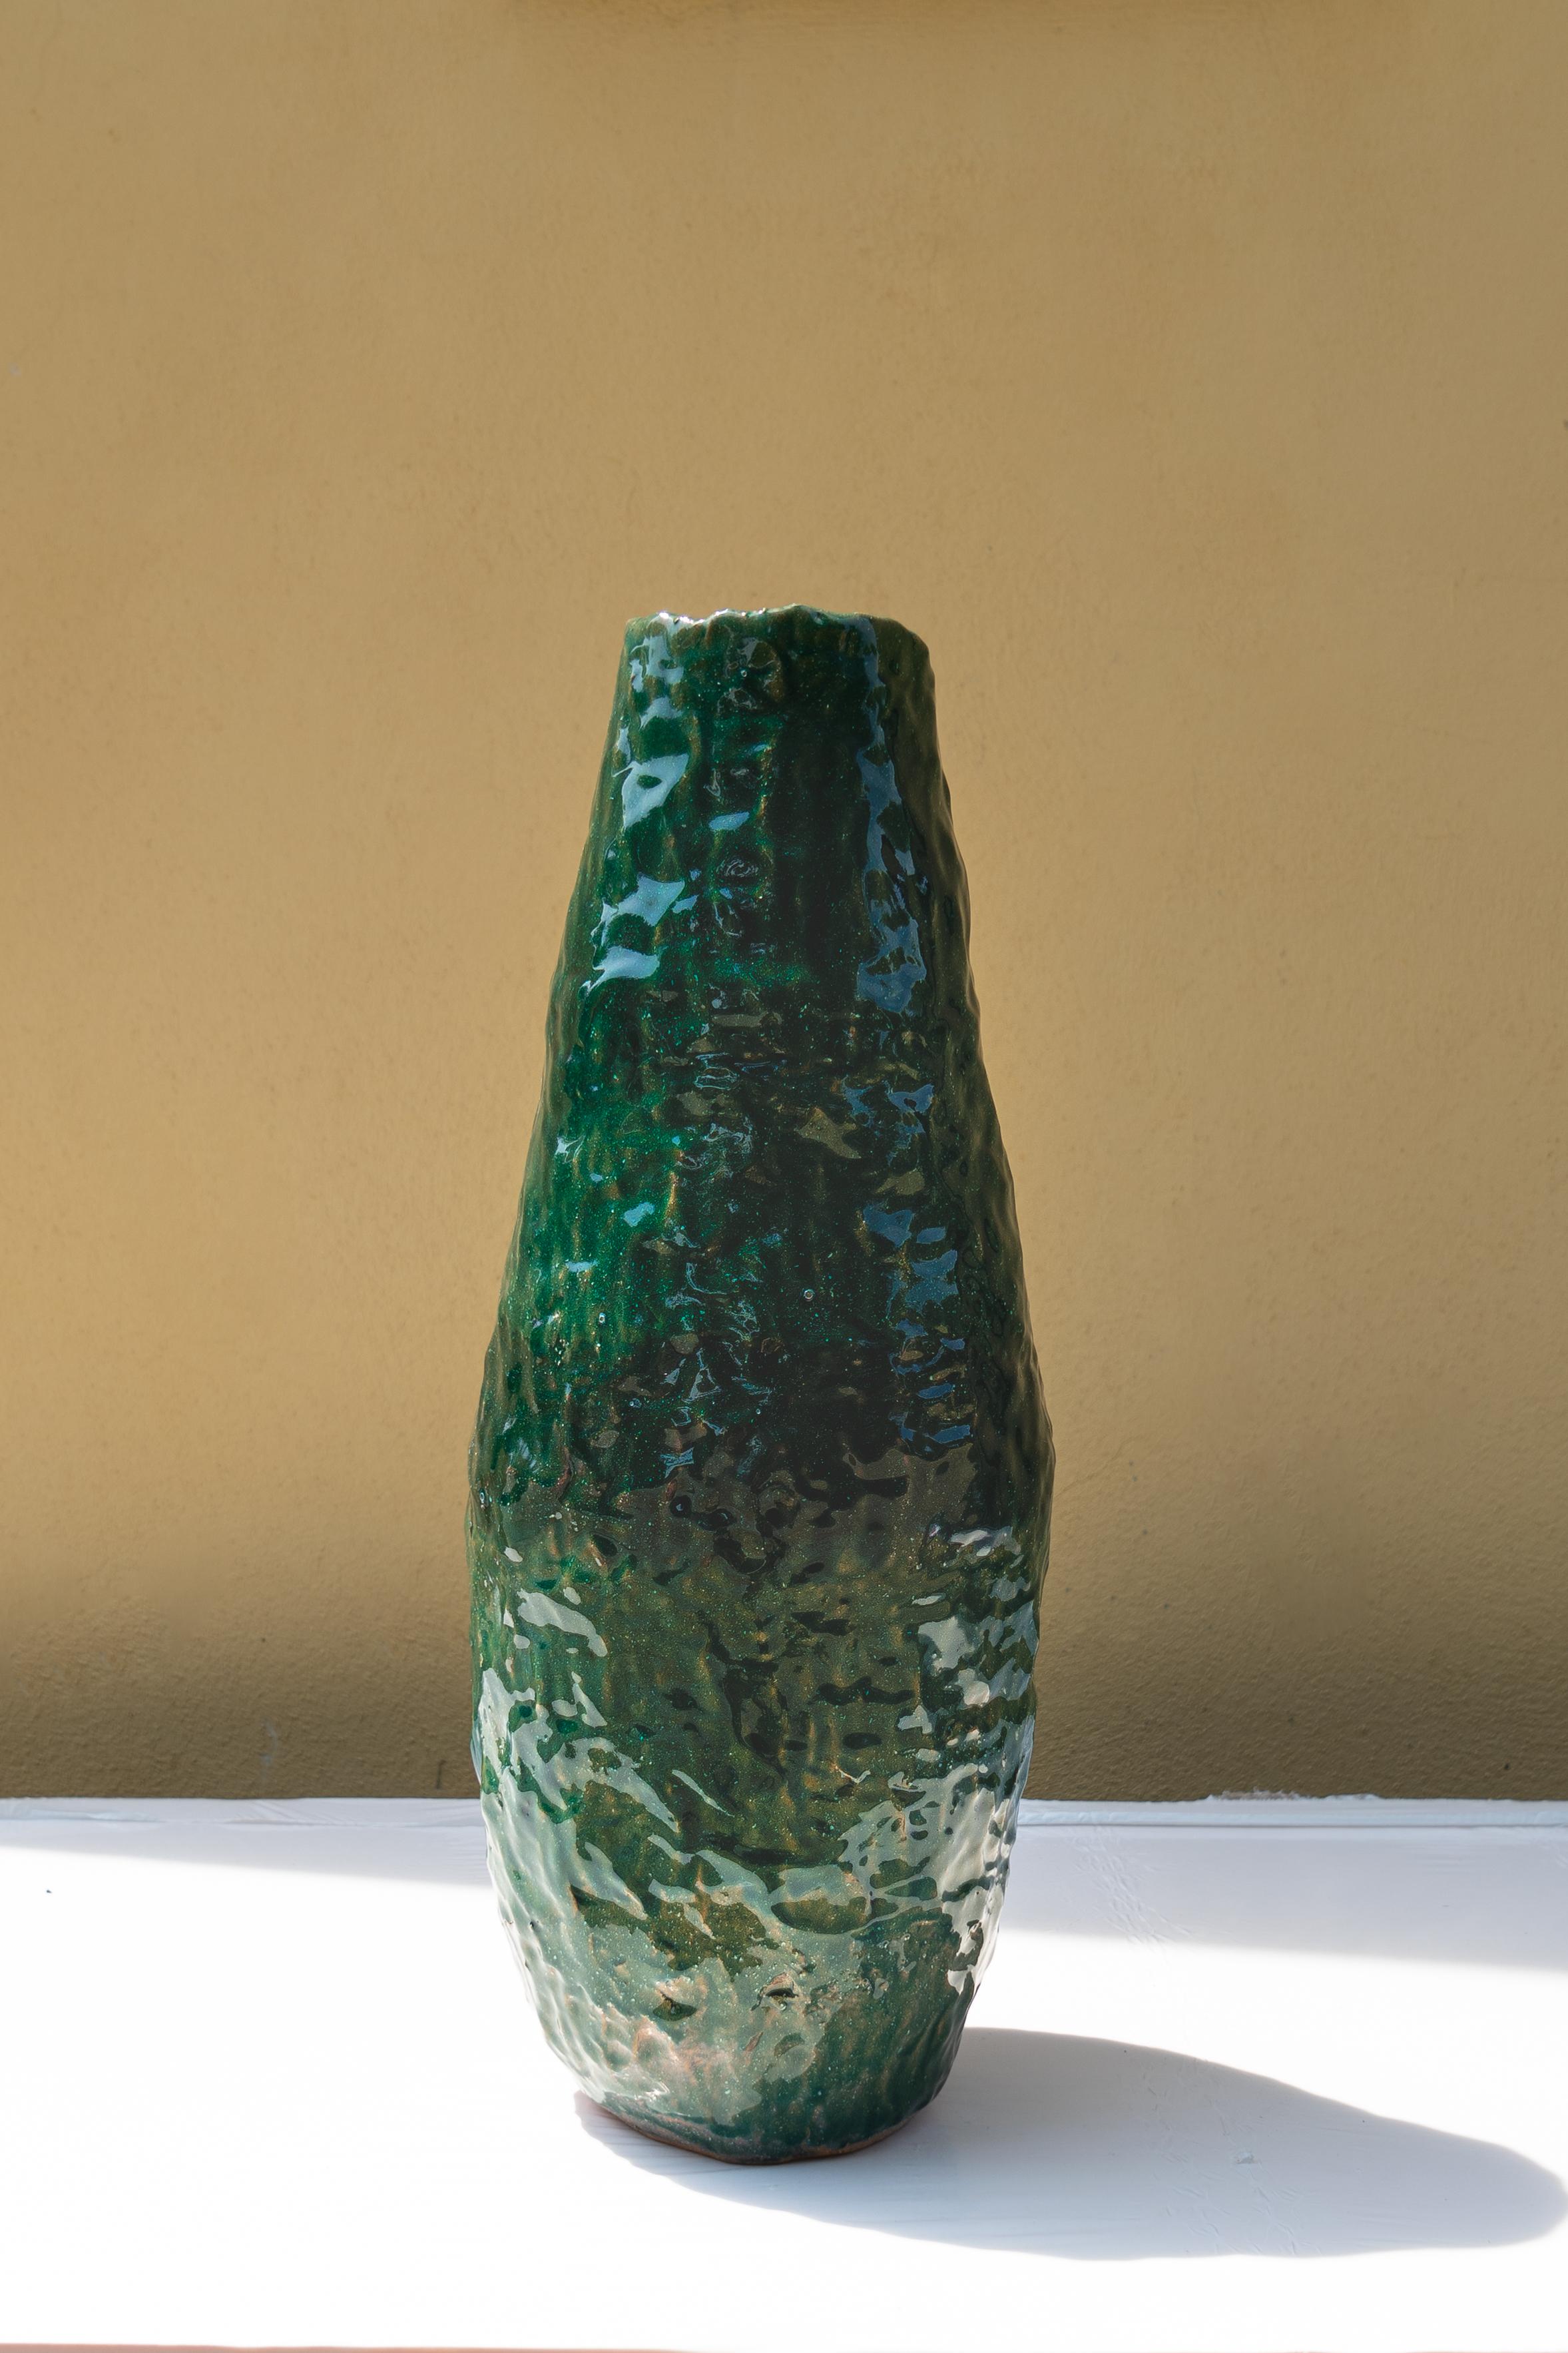 Grüne Vase von Daniele Giannetti
Abmessungen: Ø 22 x H 52 cm.
MATERIAL: glasierte Terrakotta. 

Alle Stücke werden aus Terrakotta aus Montelupo hergestellt, nur einmal gebrannt und dann von Daniele Giannetti mit einer weißen Acrylbasis und einer